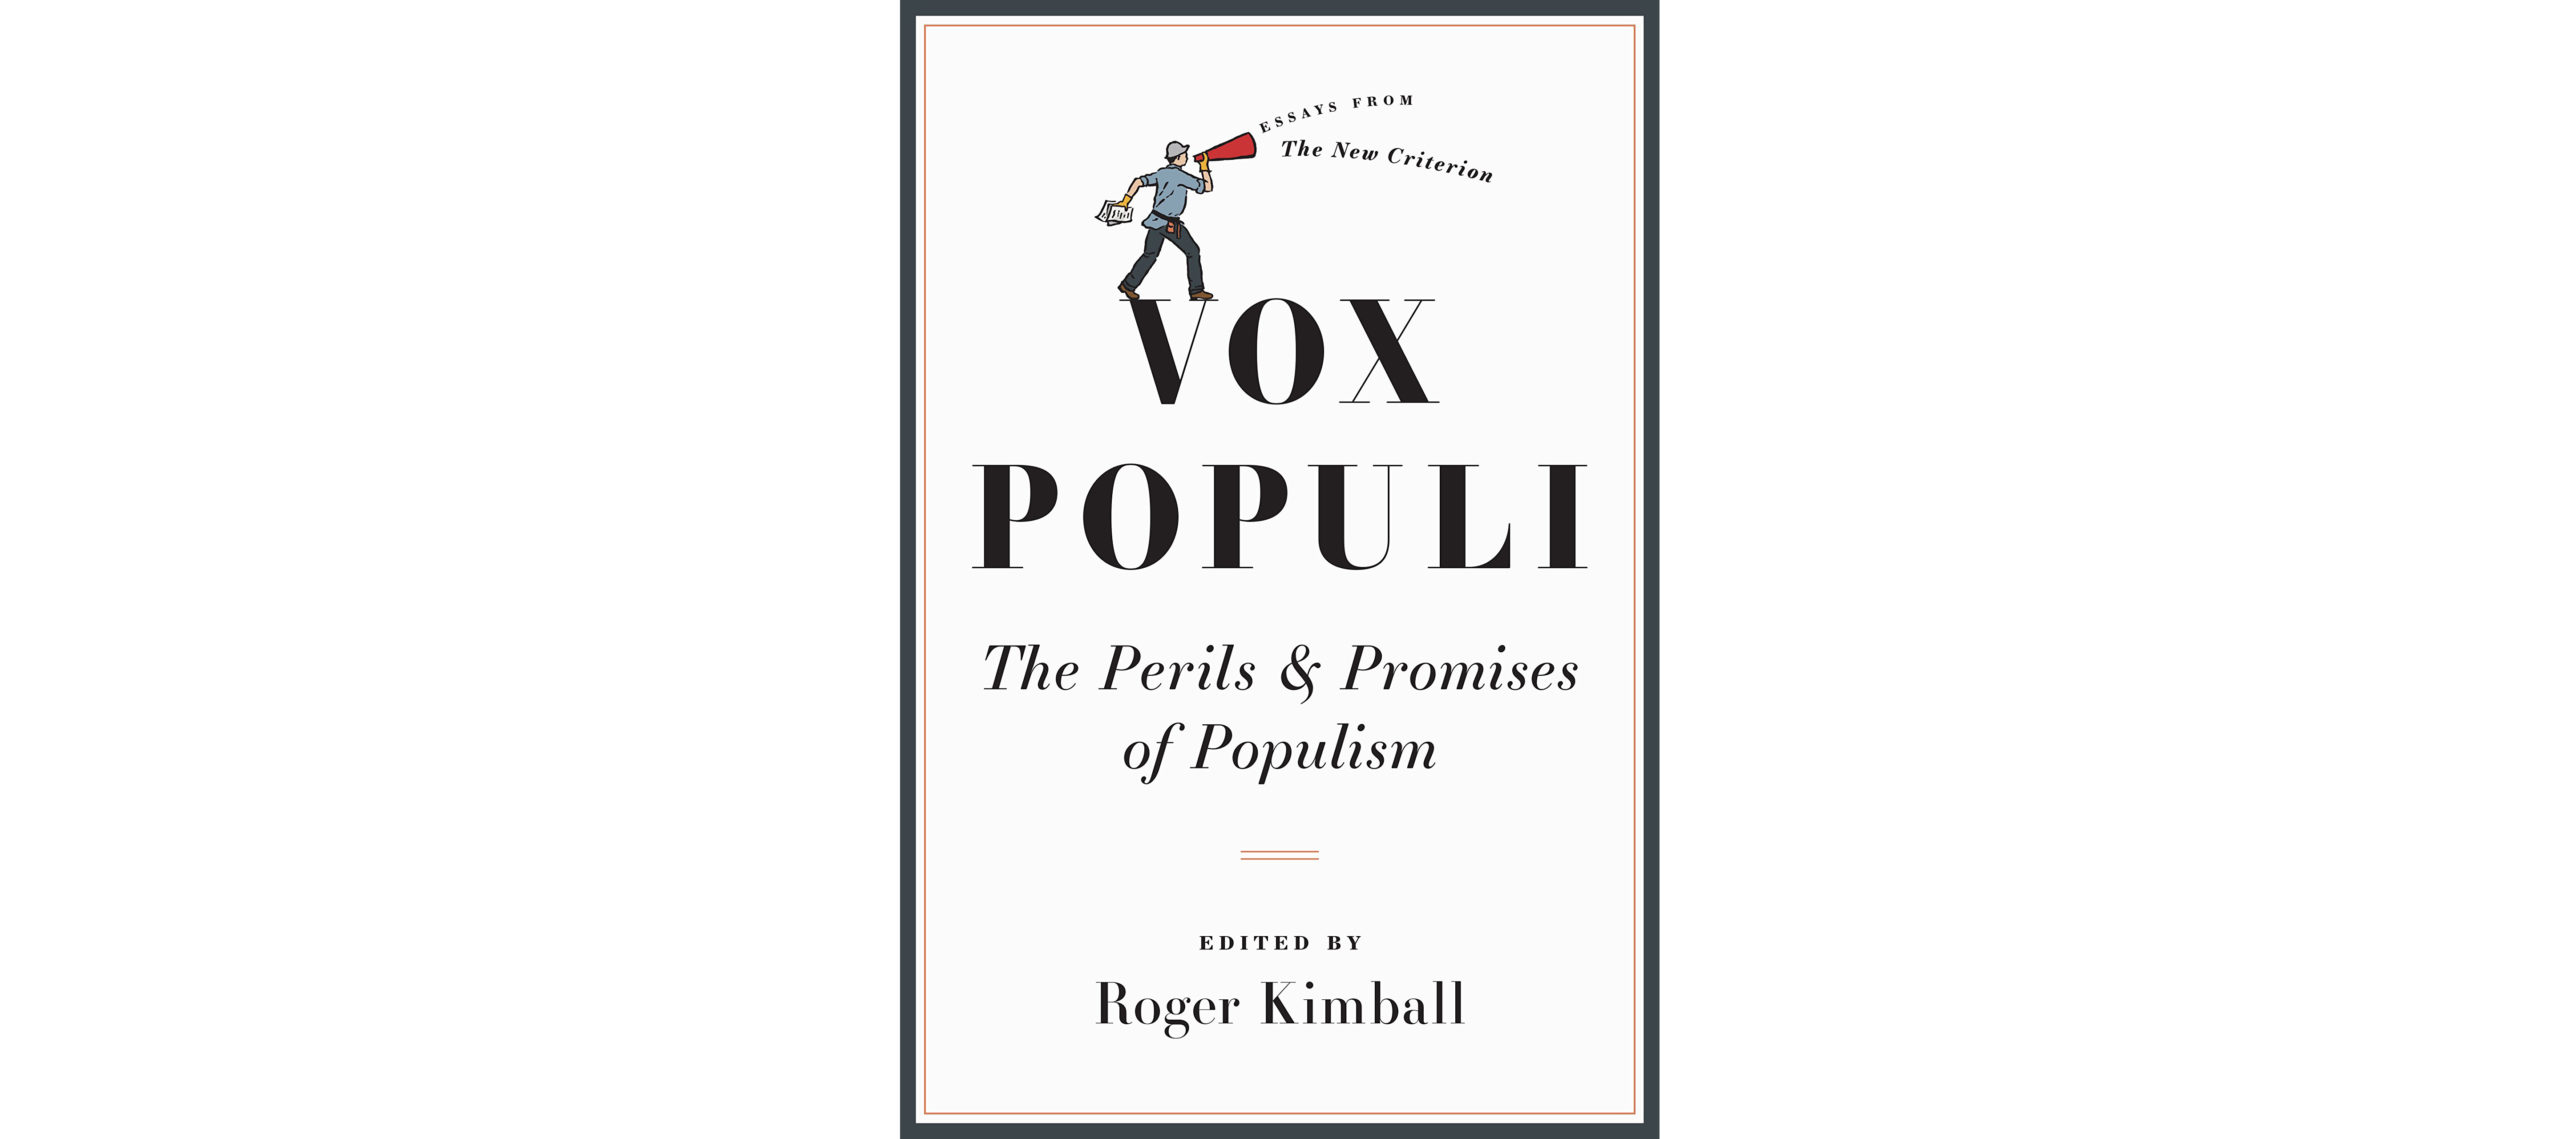 Introducing Vox Populi